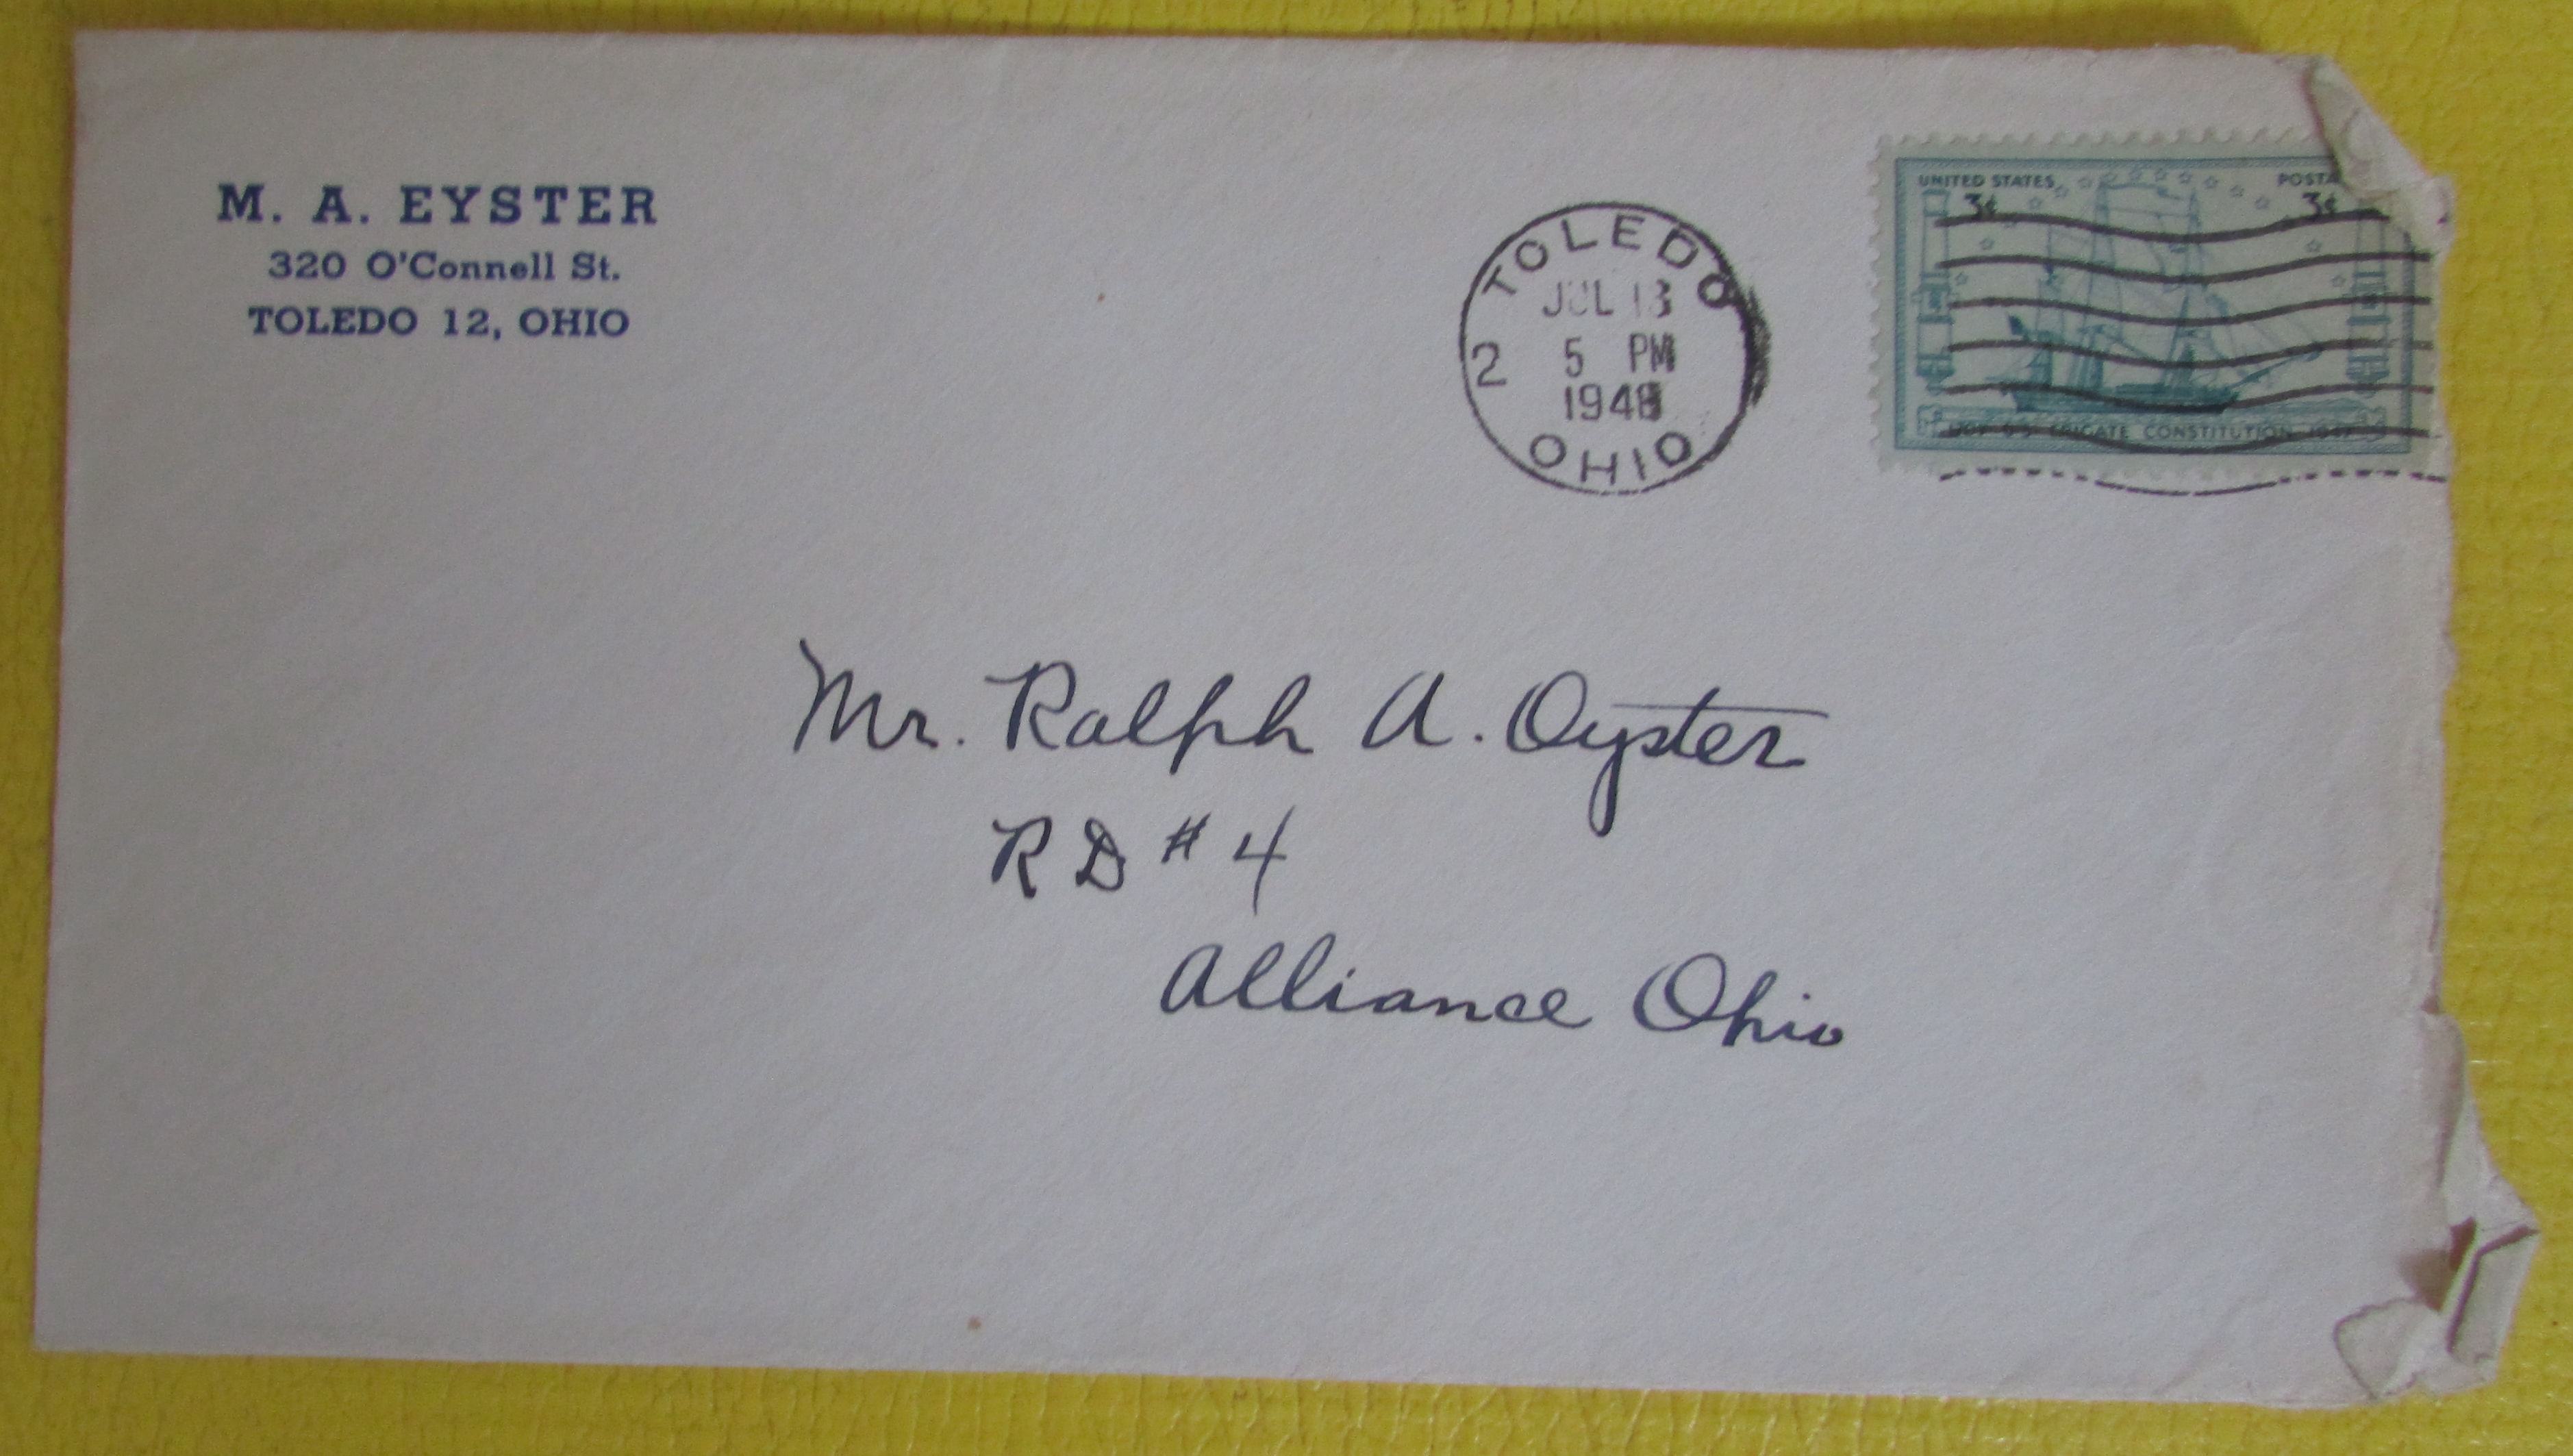 Envelope from 1948 letter